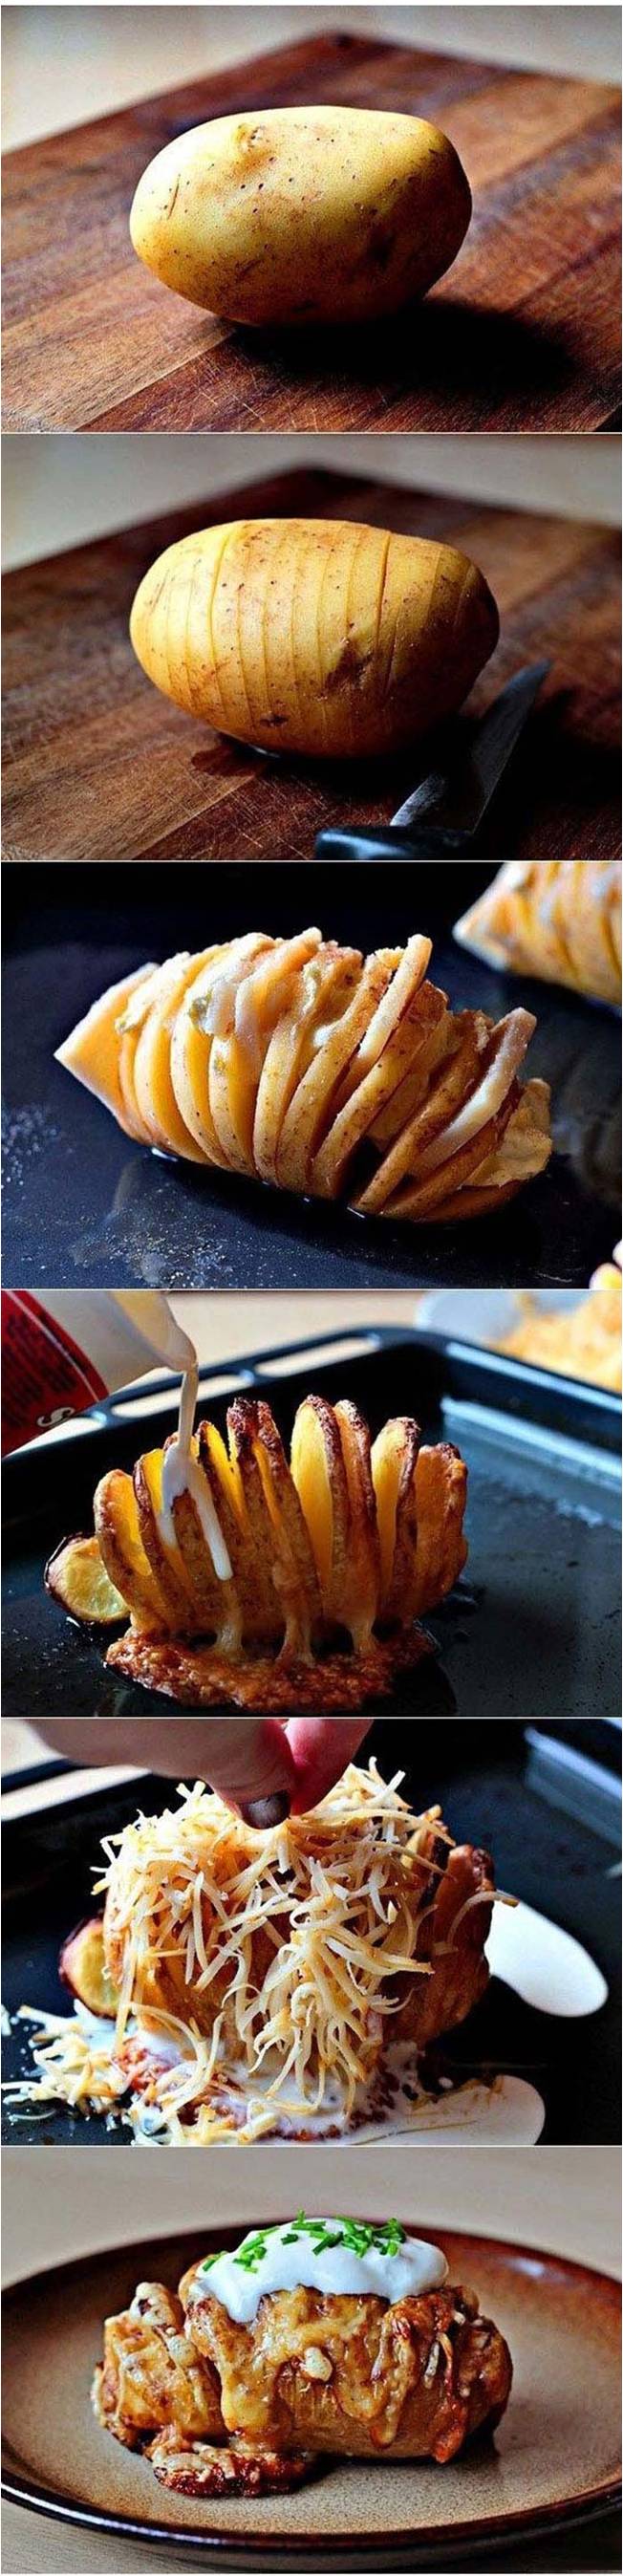 9. Perfect potato